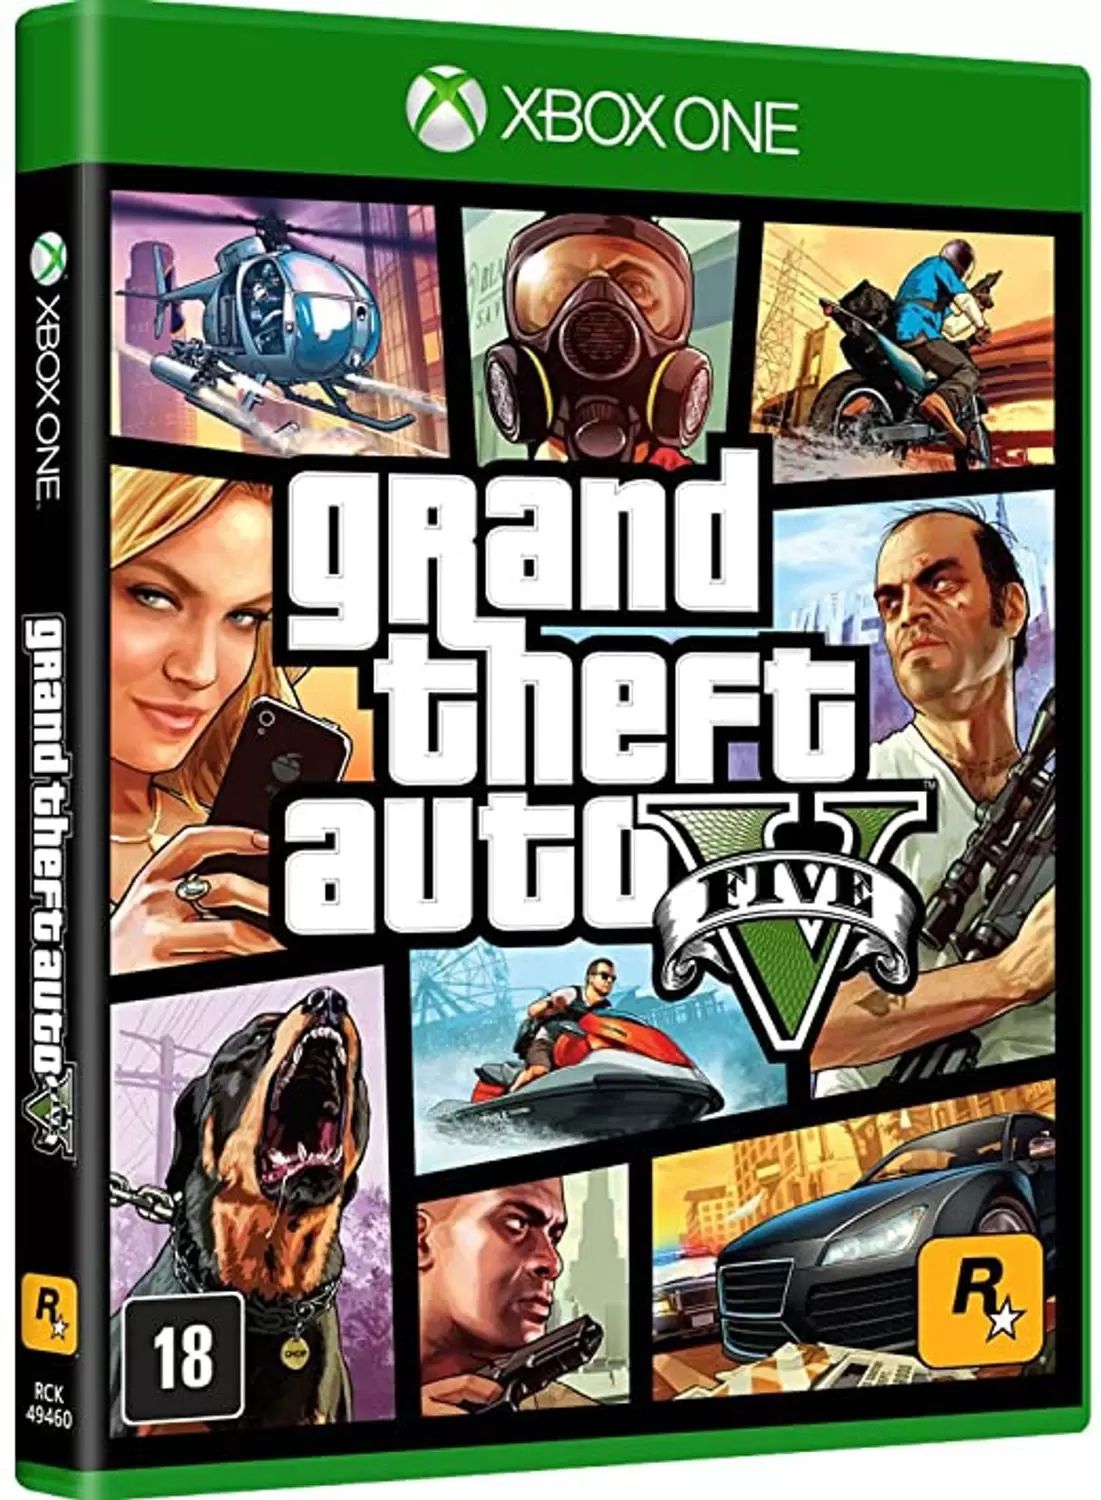 Comprar o Grand Theft Auto V (Xbox One)